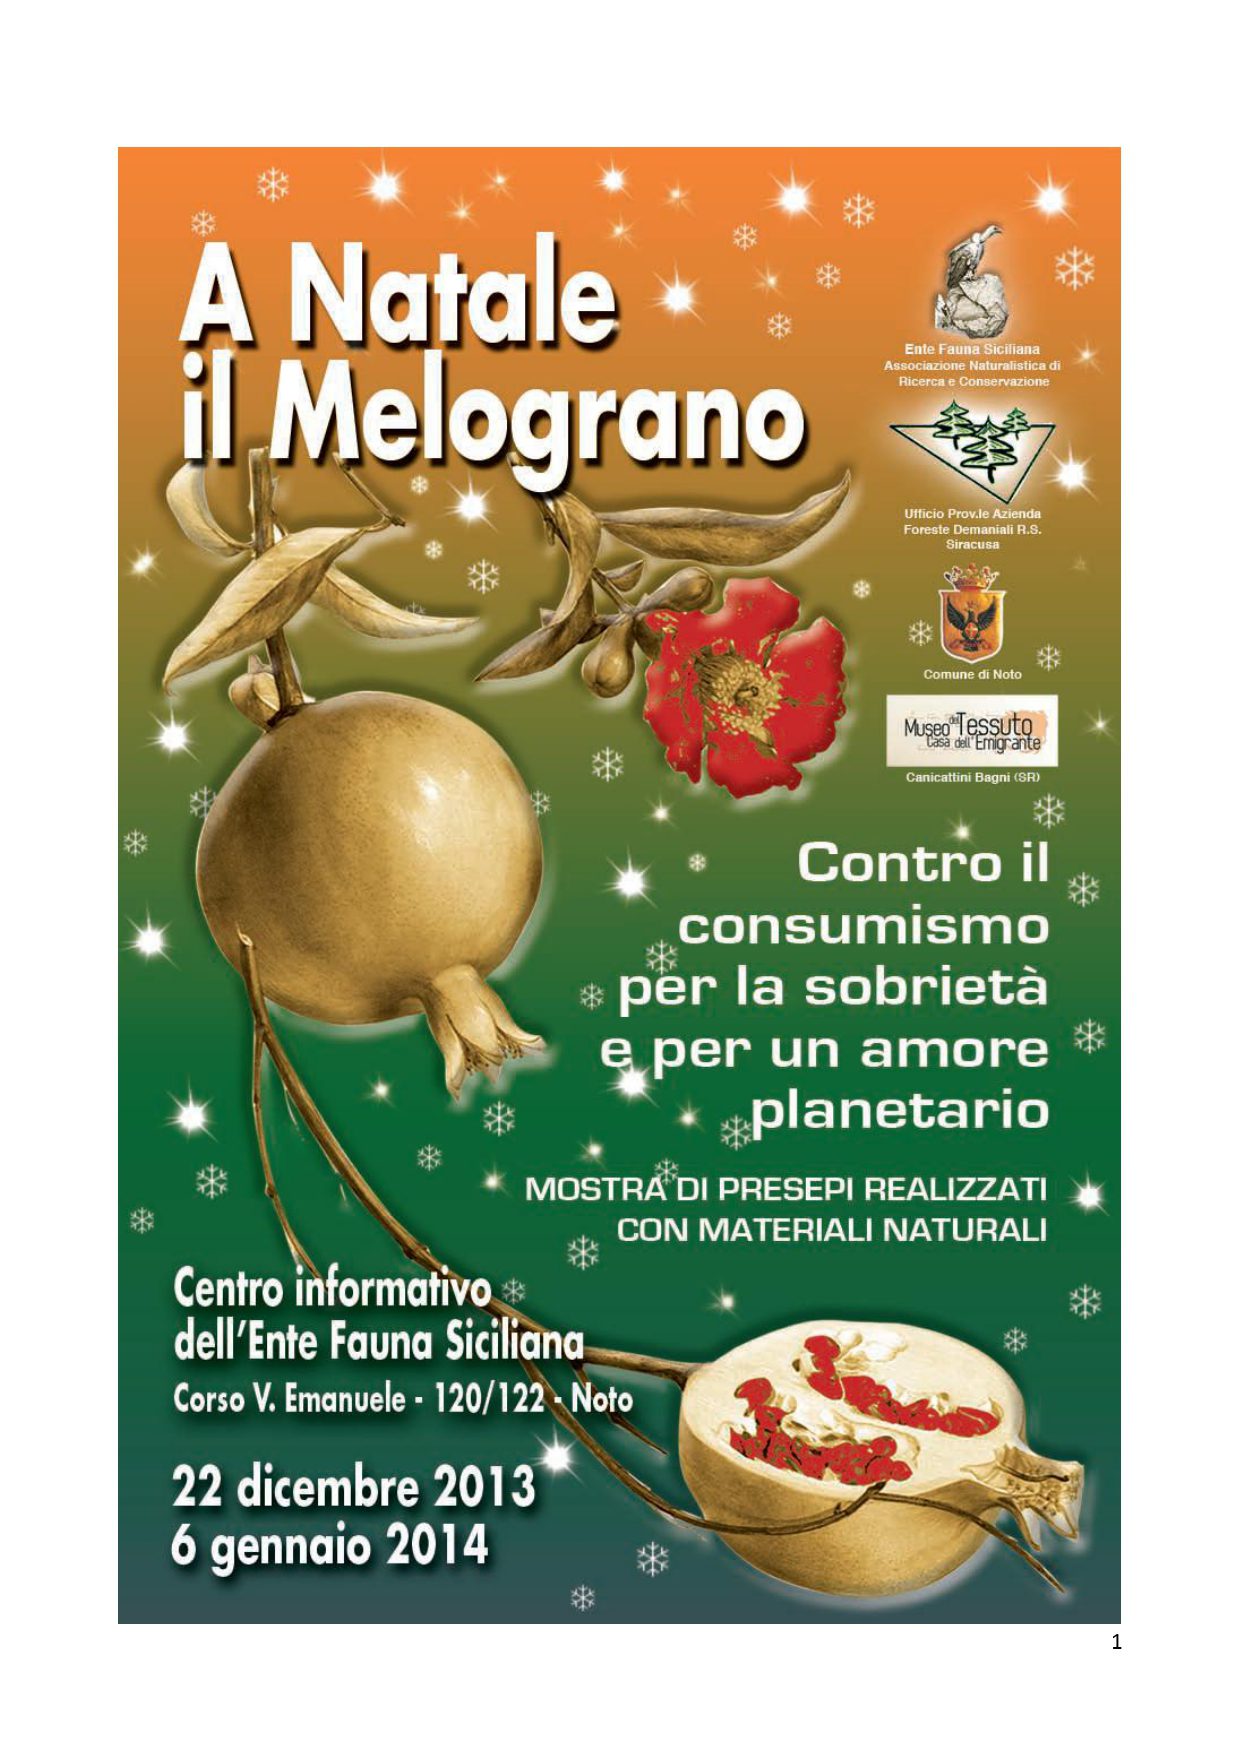 "A Natale il Melograno" Mostra di presepi realizzati con materiali naturali 2013